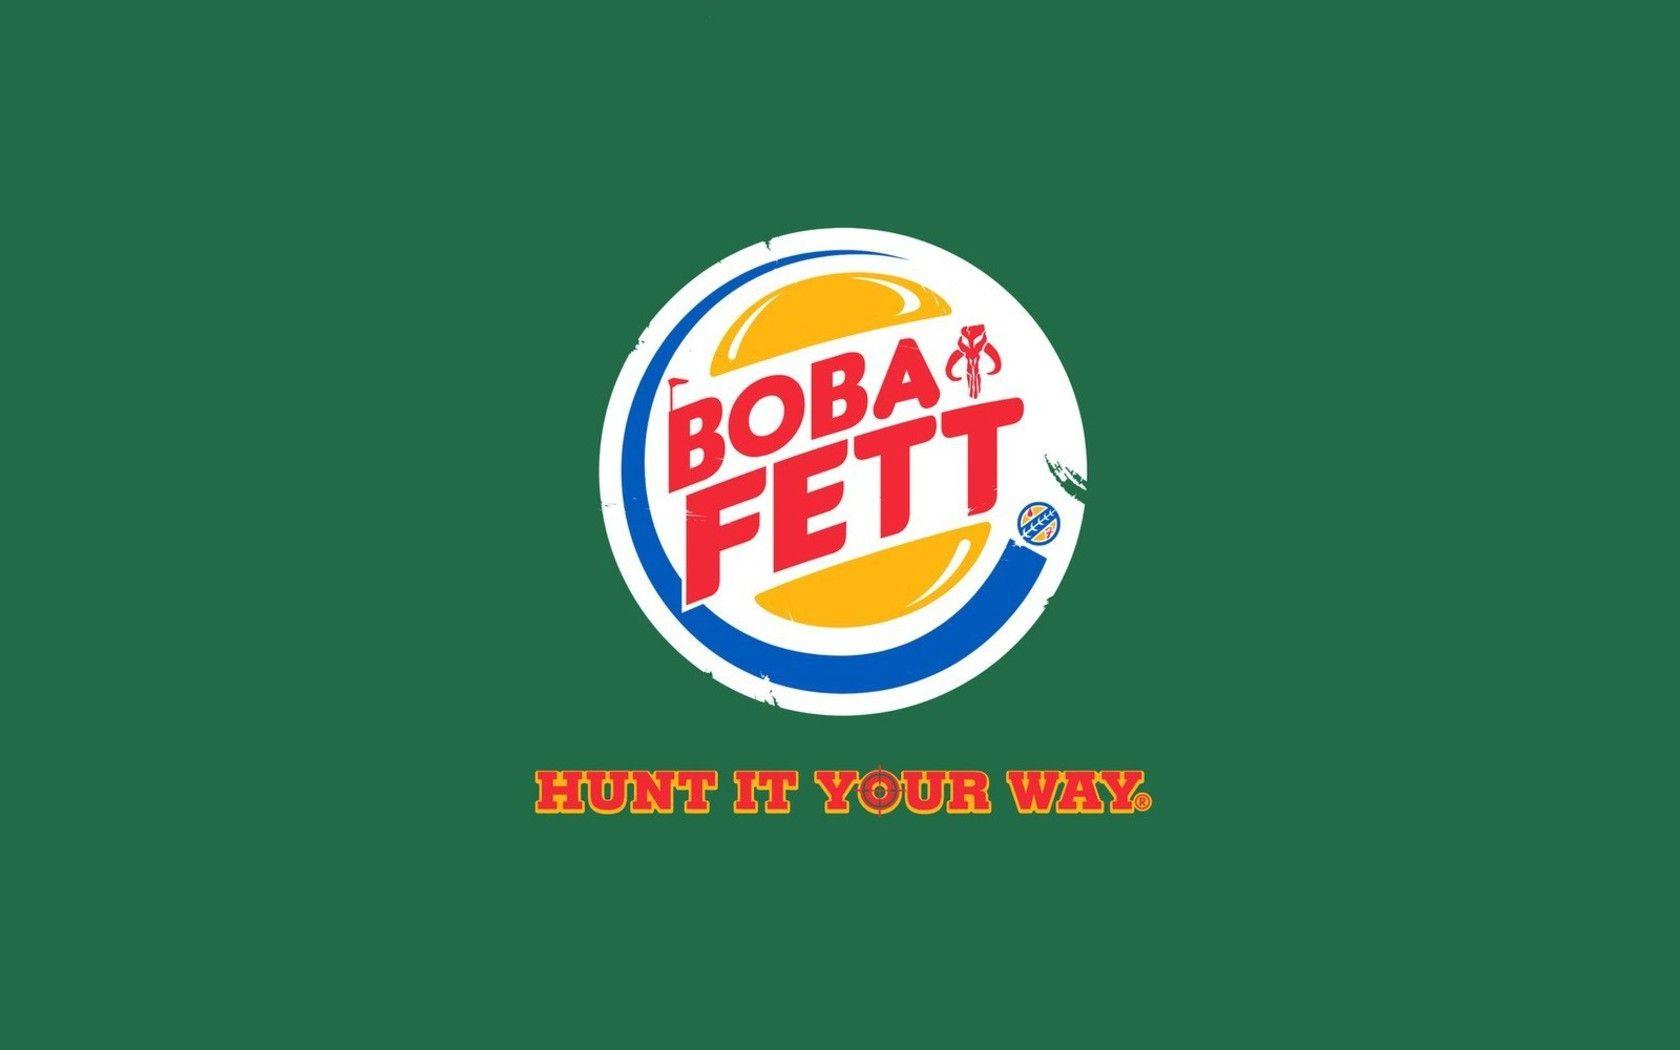 Boba fett front parody logos burger king wallpaper. AllWallpaper